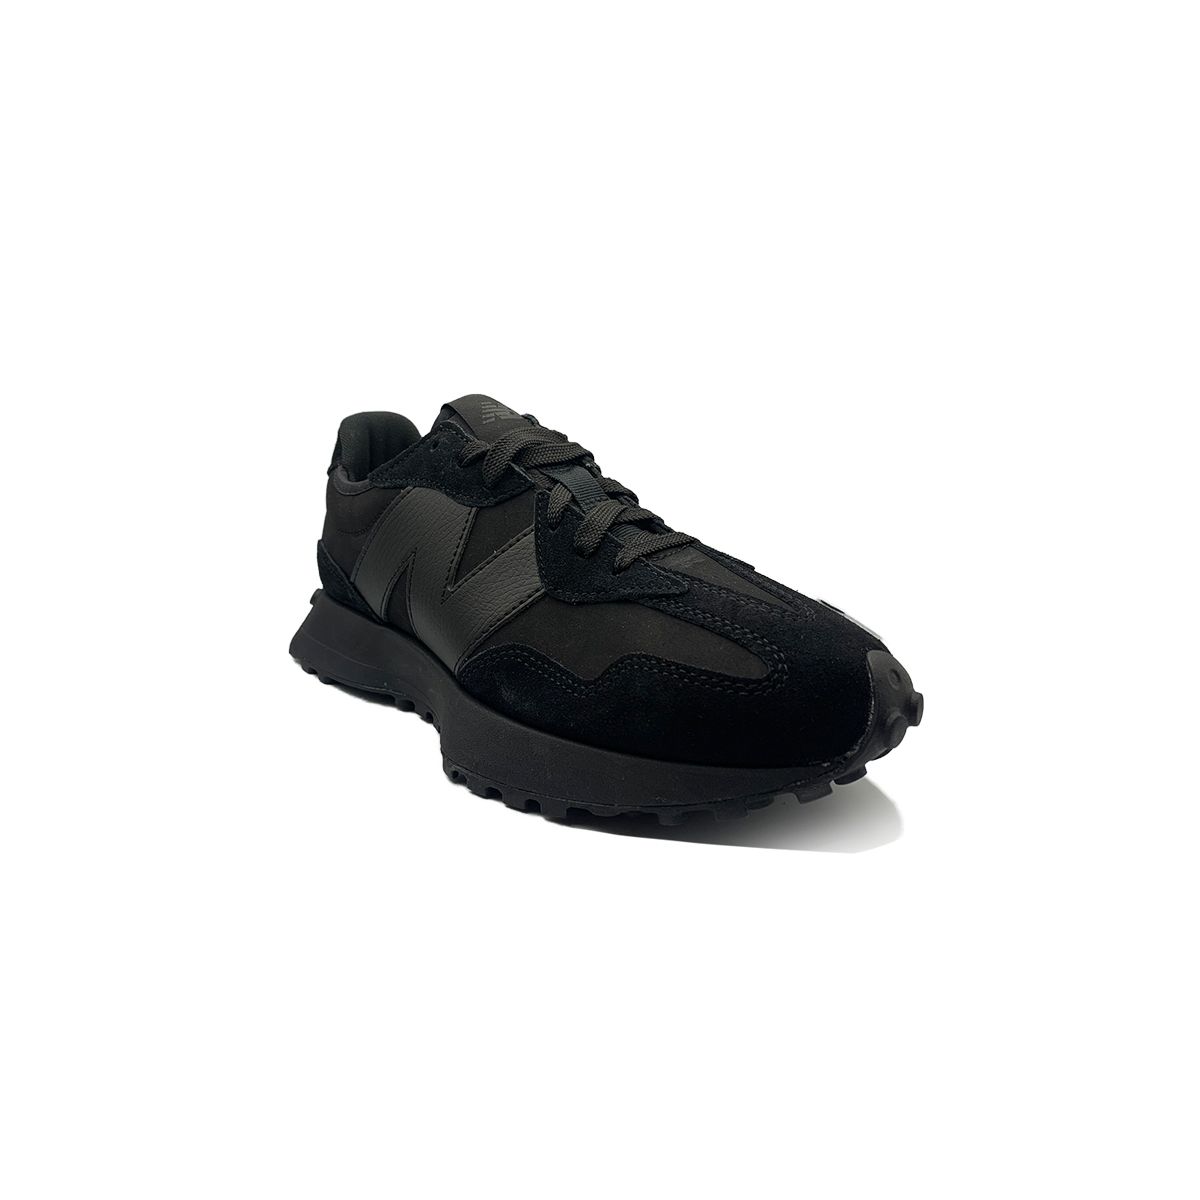 Black Shoes 57/40